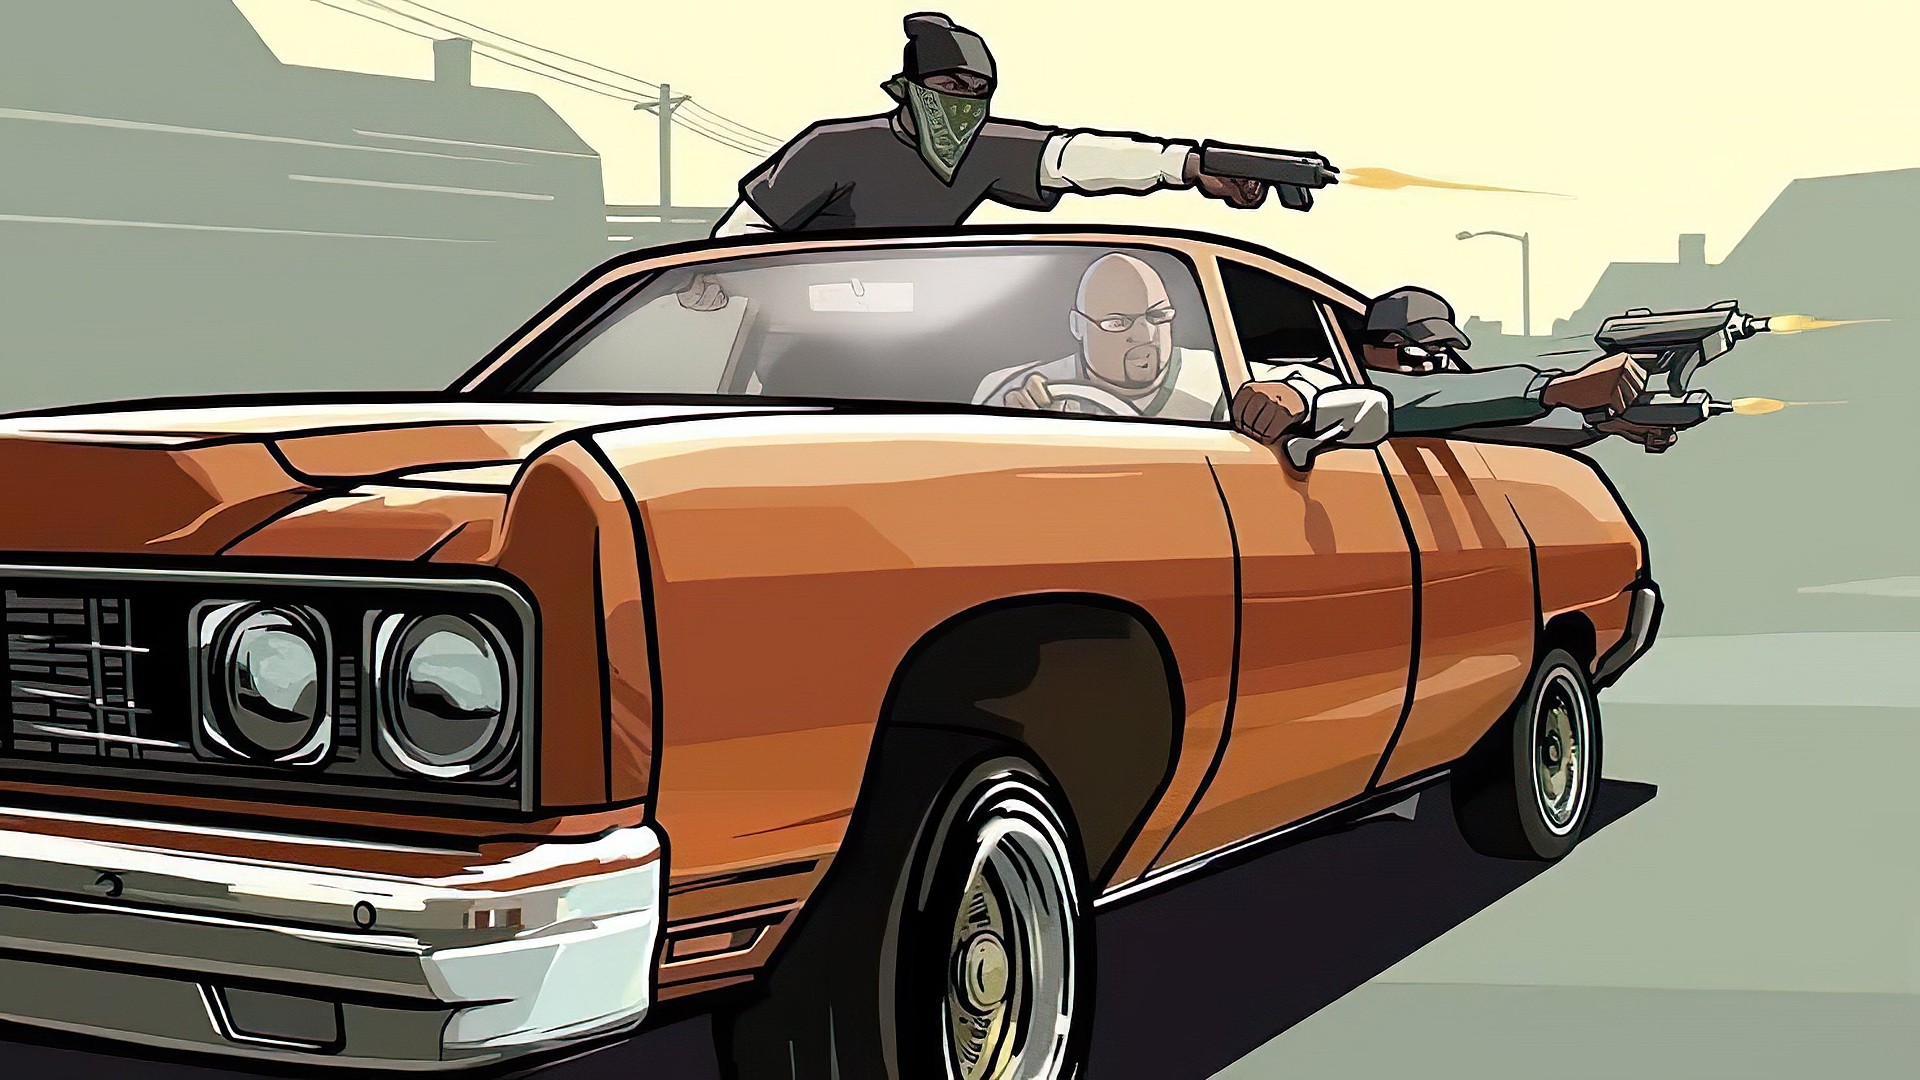 Арт Grand Theft Auto: San Andreas (GTA: San Andreas) - всего 18 артов из игры